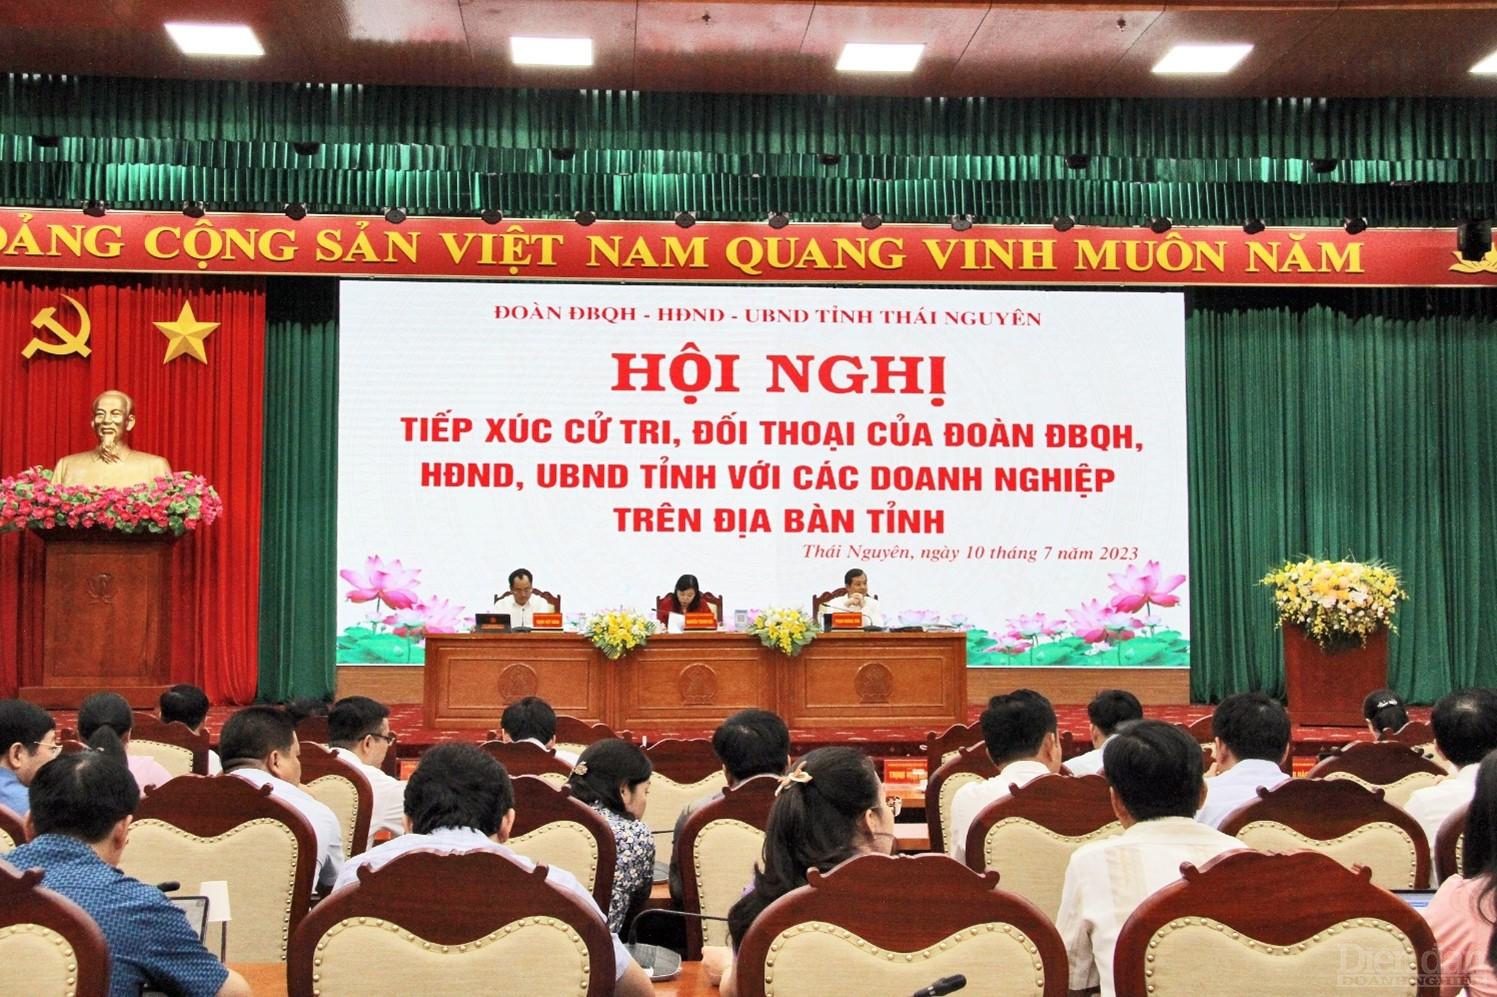 Hội nghị tiếp xúc cử tri là doanh nghiệp lần đầu được tổ chức tại Thái Nguyên cho thấy sự quan tâm sát sao của lãnh đạo tỉnh với cộng đồng doanh nghiệp